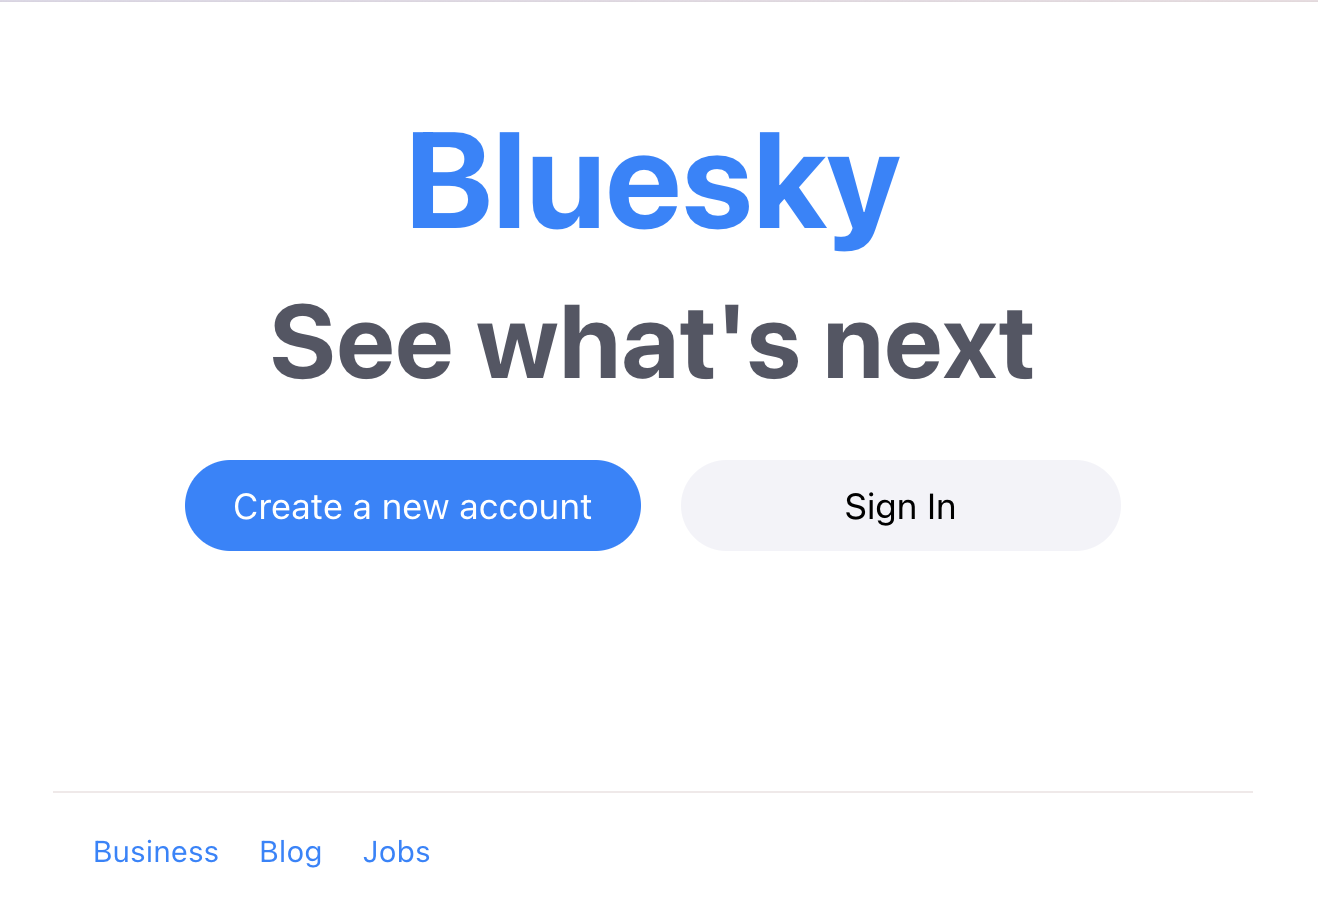 The Bluesky web app